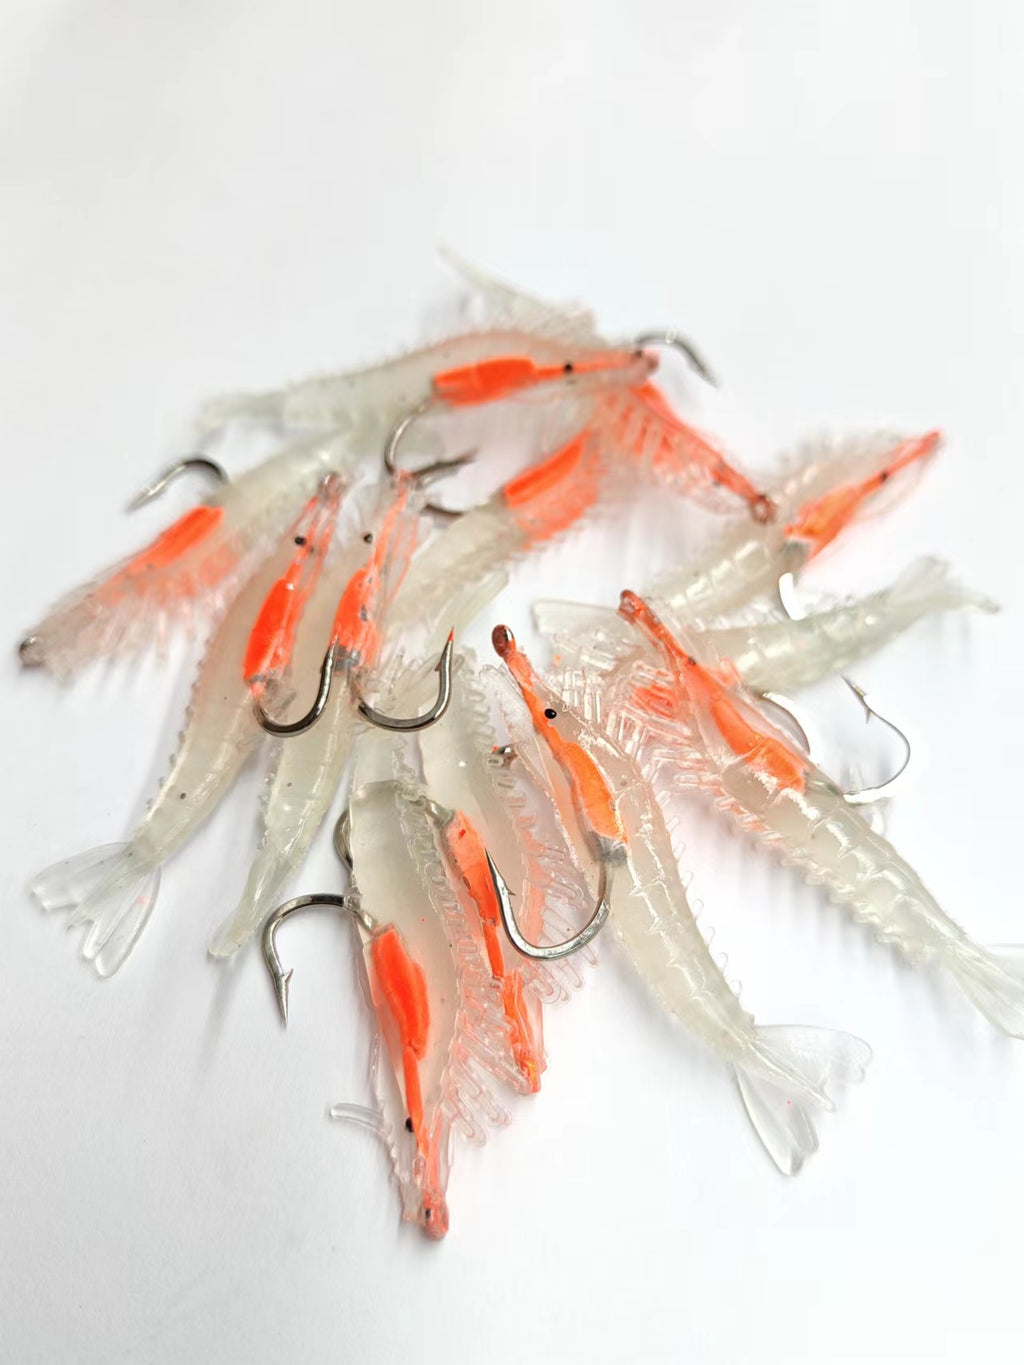 12pcs (4pks) Small Shrimp Fishing Lure with hooks 65mm 3g Luminous